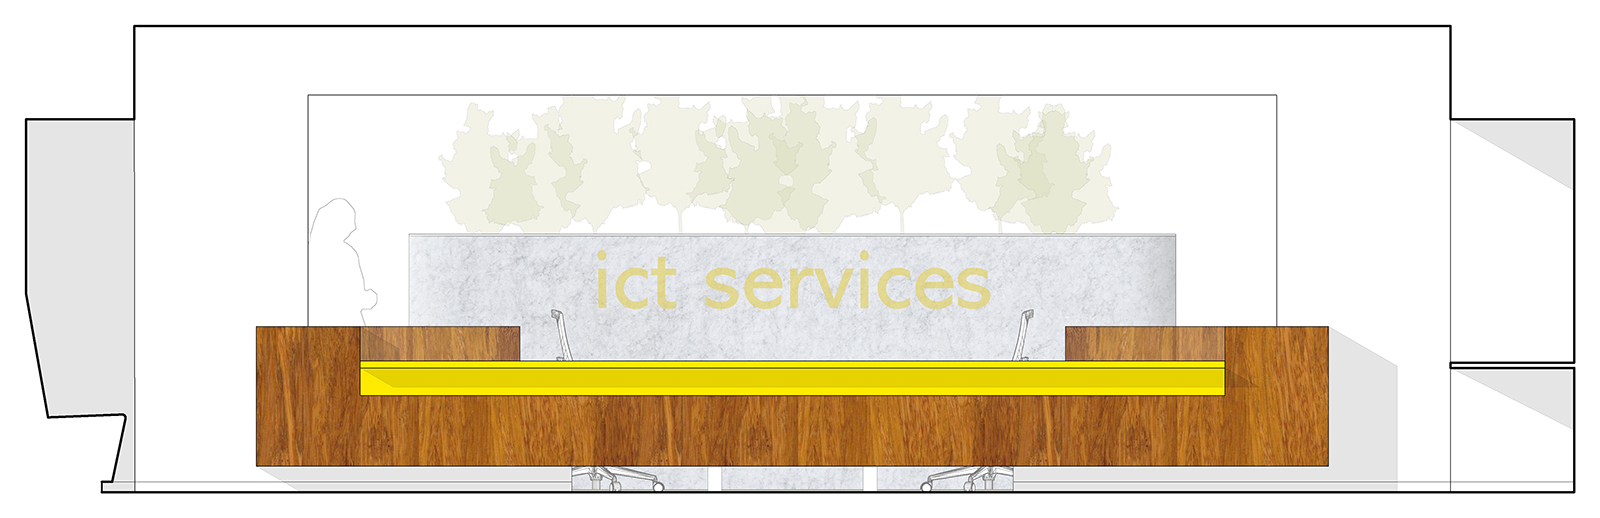 StM-MetaForum-ICT-services